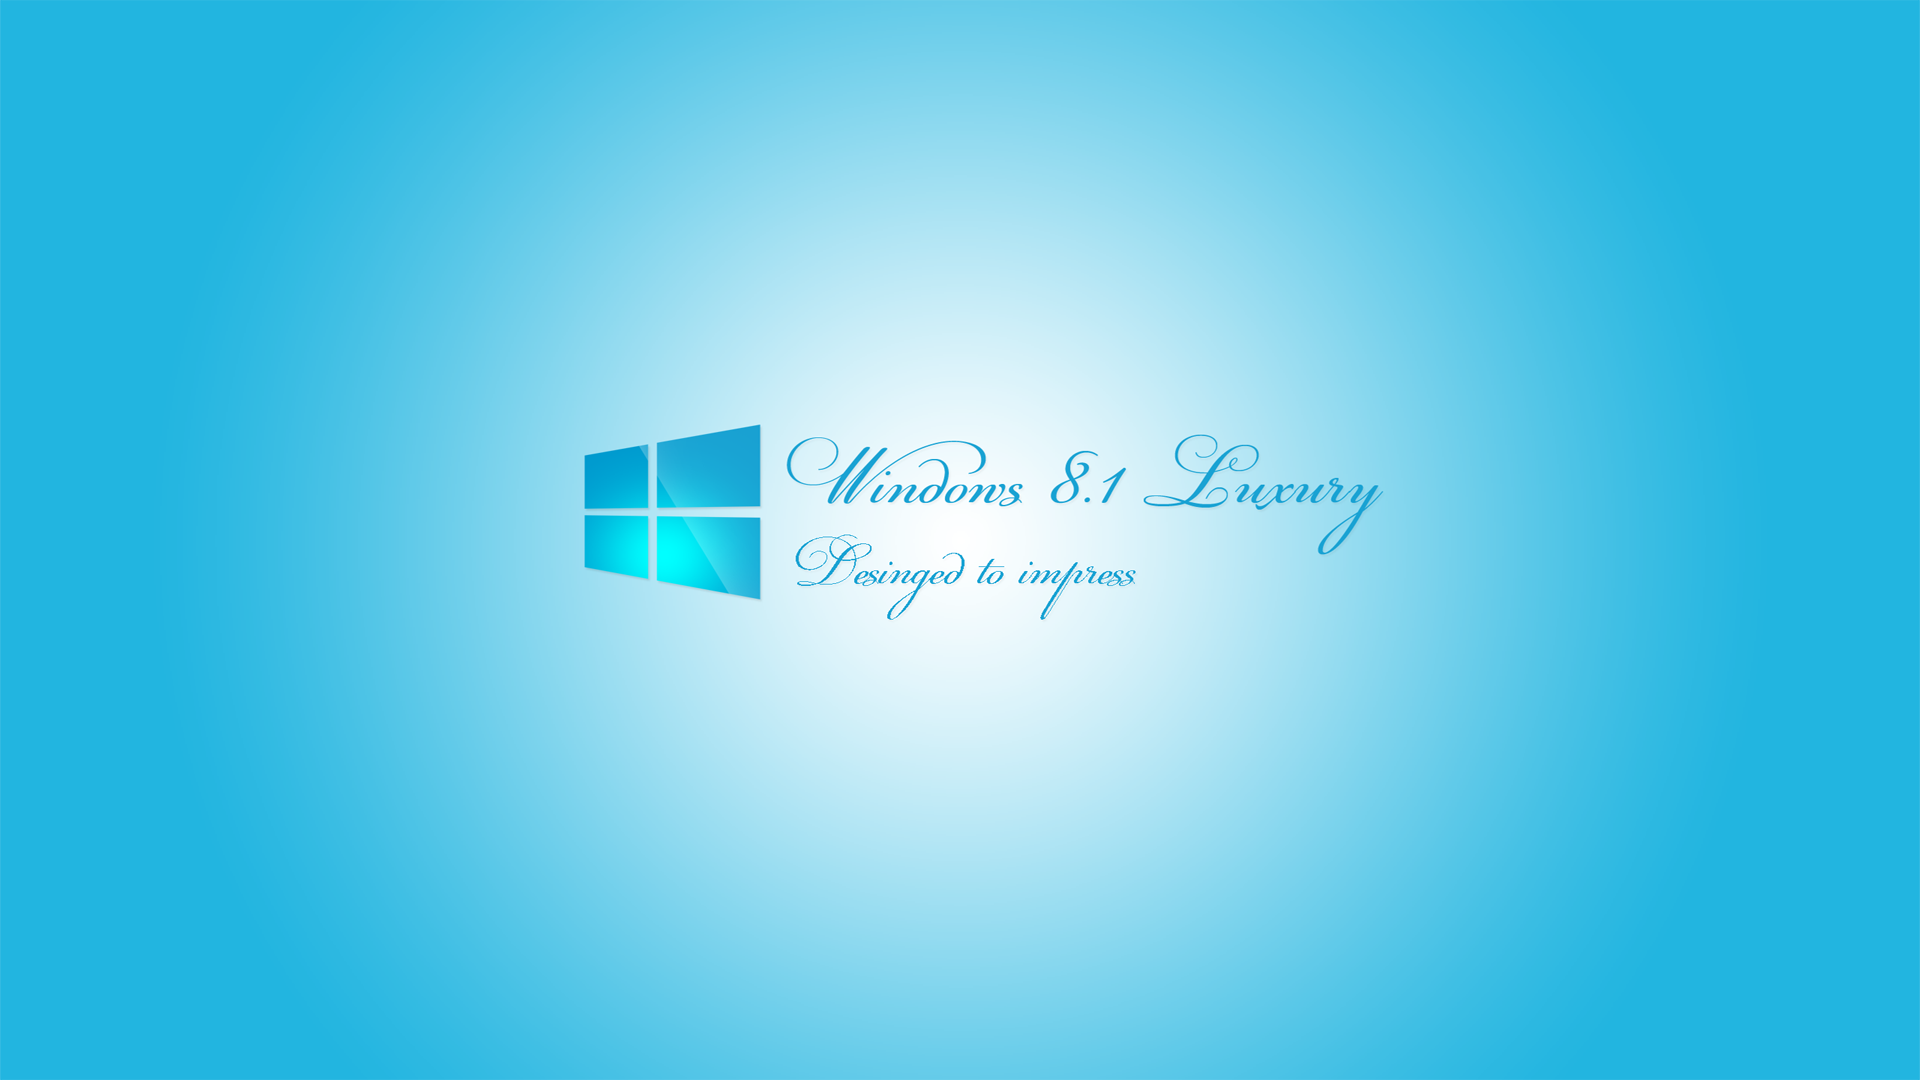 Windows 8.1 Luxury Wallpaper by khatmau on DeviantArt